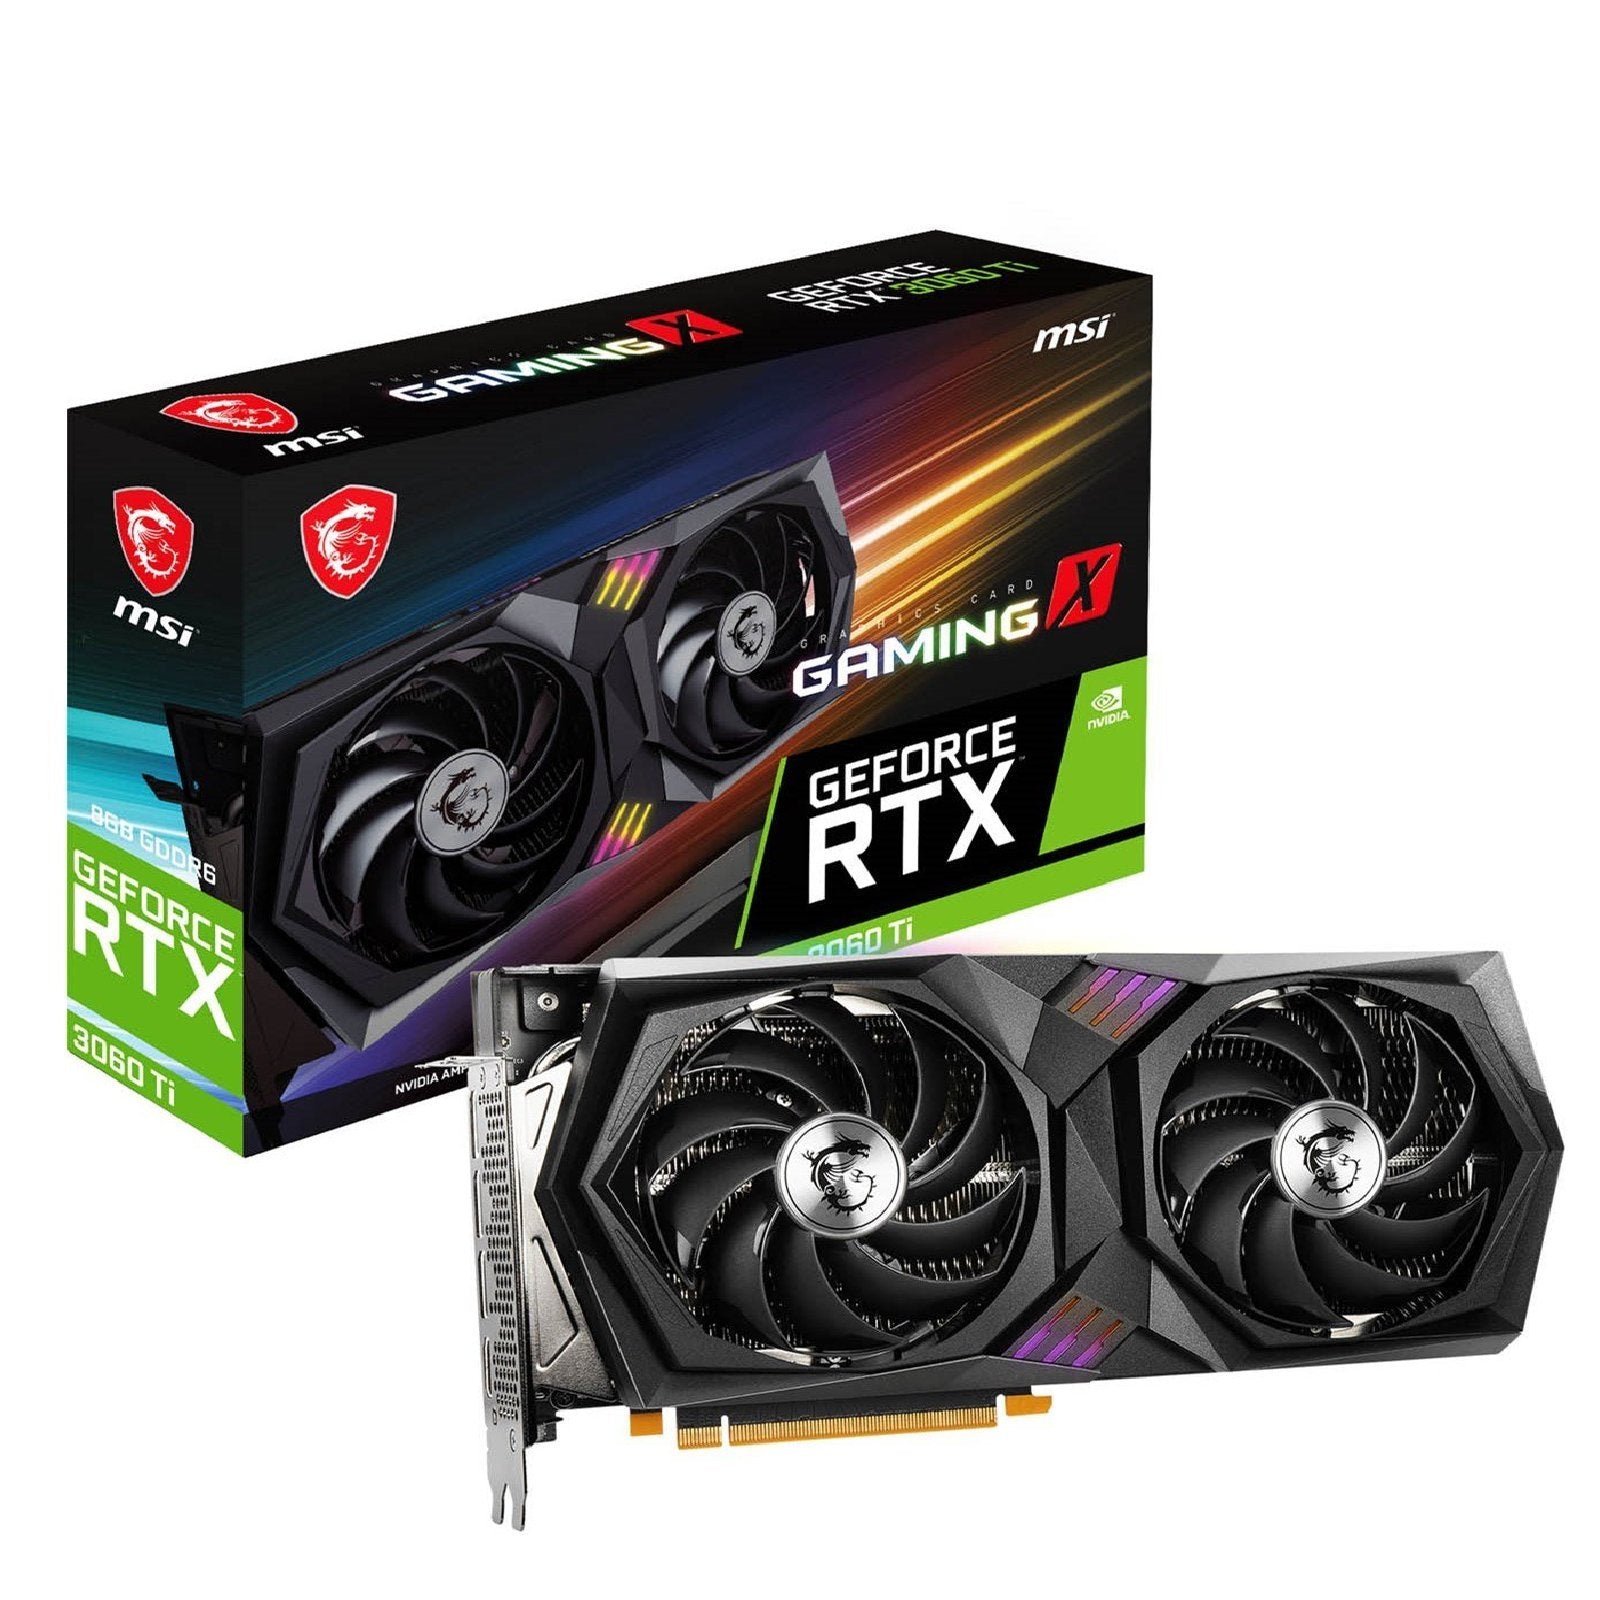 MSI GeForce RTX 3060Ti Gaming X LHR Dual-Fan 8GB GDDR6 GPU - Store 974 | ستور ٩٧٤